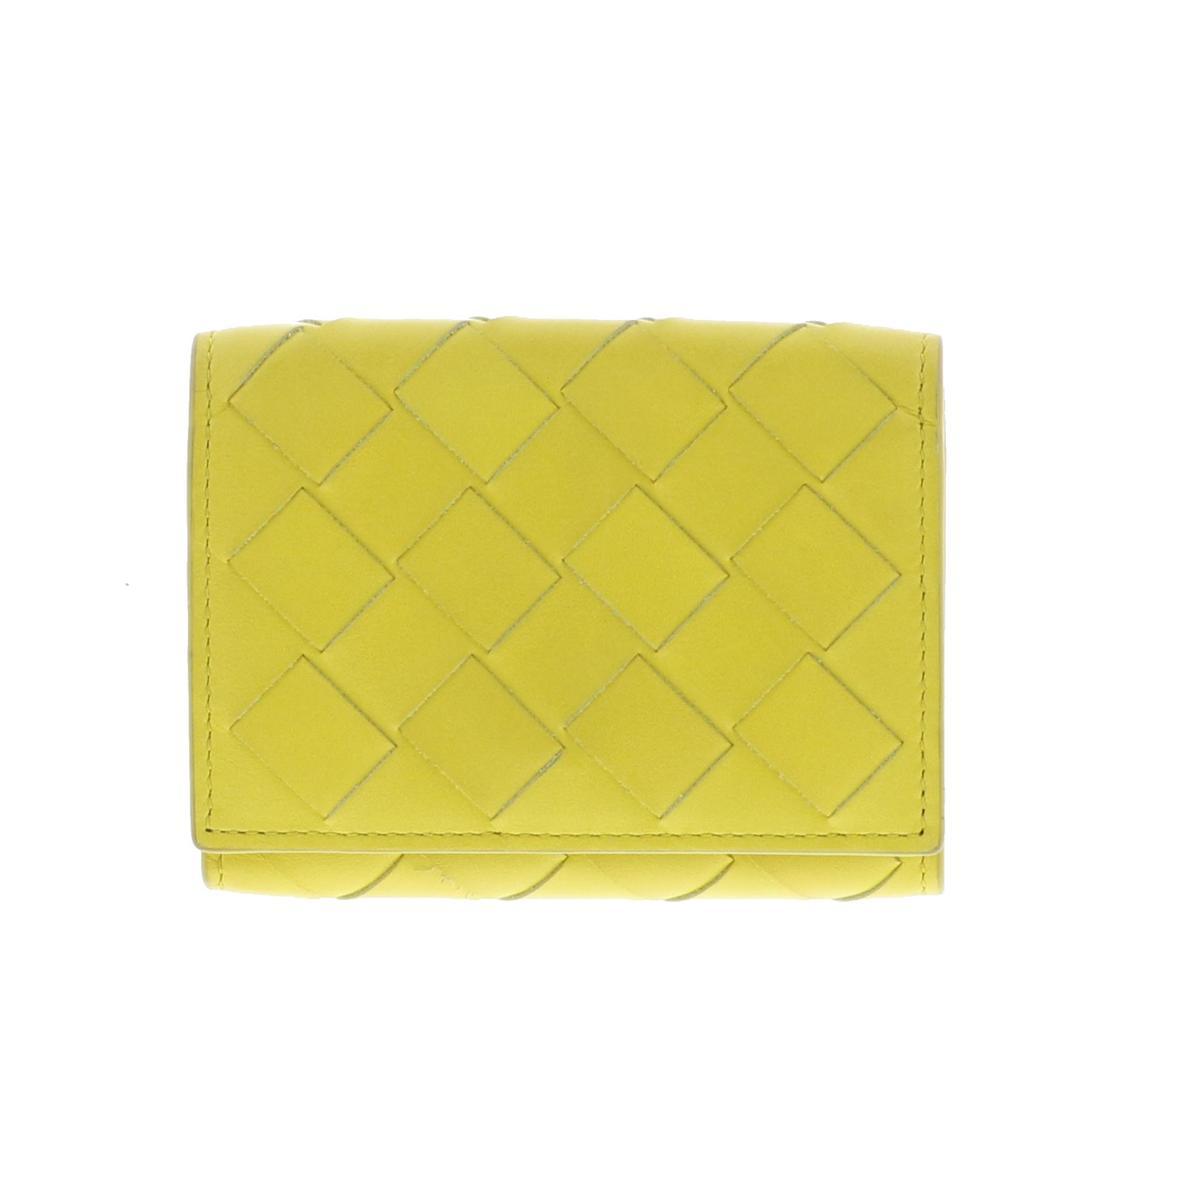 【即納&大特価】 BOTTEGA VENETA 三つ折りウォレット Leather Yellow 609285 三つ折り財布(小銭入有) 財布 ボッテガヴェネタ 財布